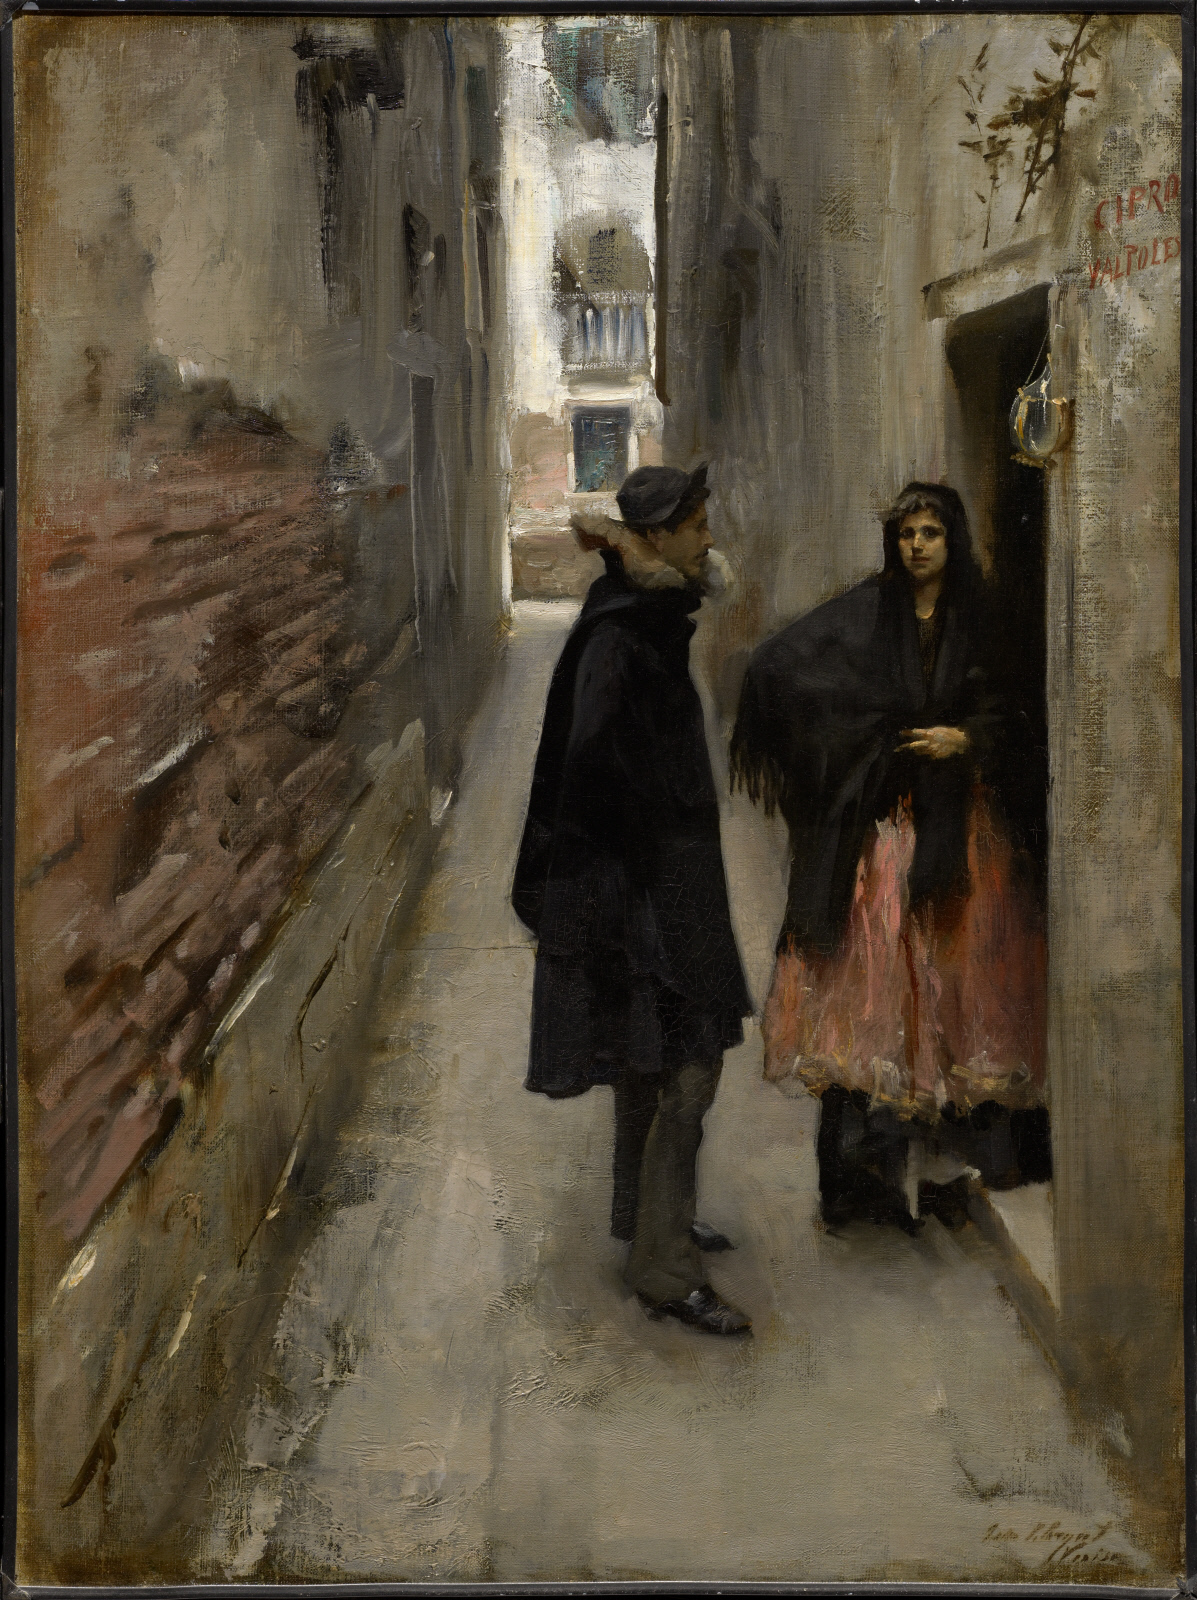 شارع في البندقية by John Singer Sargent - c. 1880–82 - 75.1 x 52.4 cm 